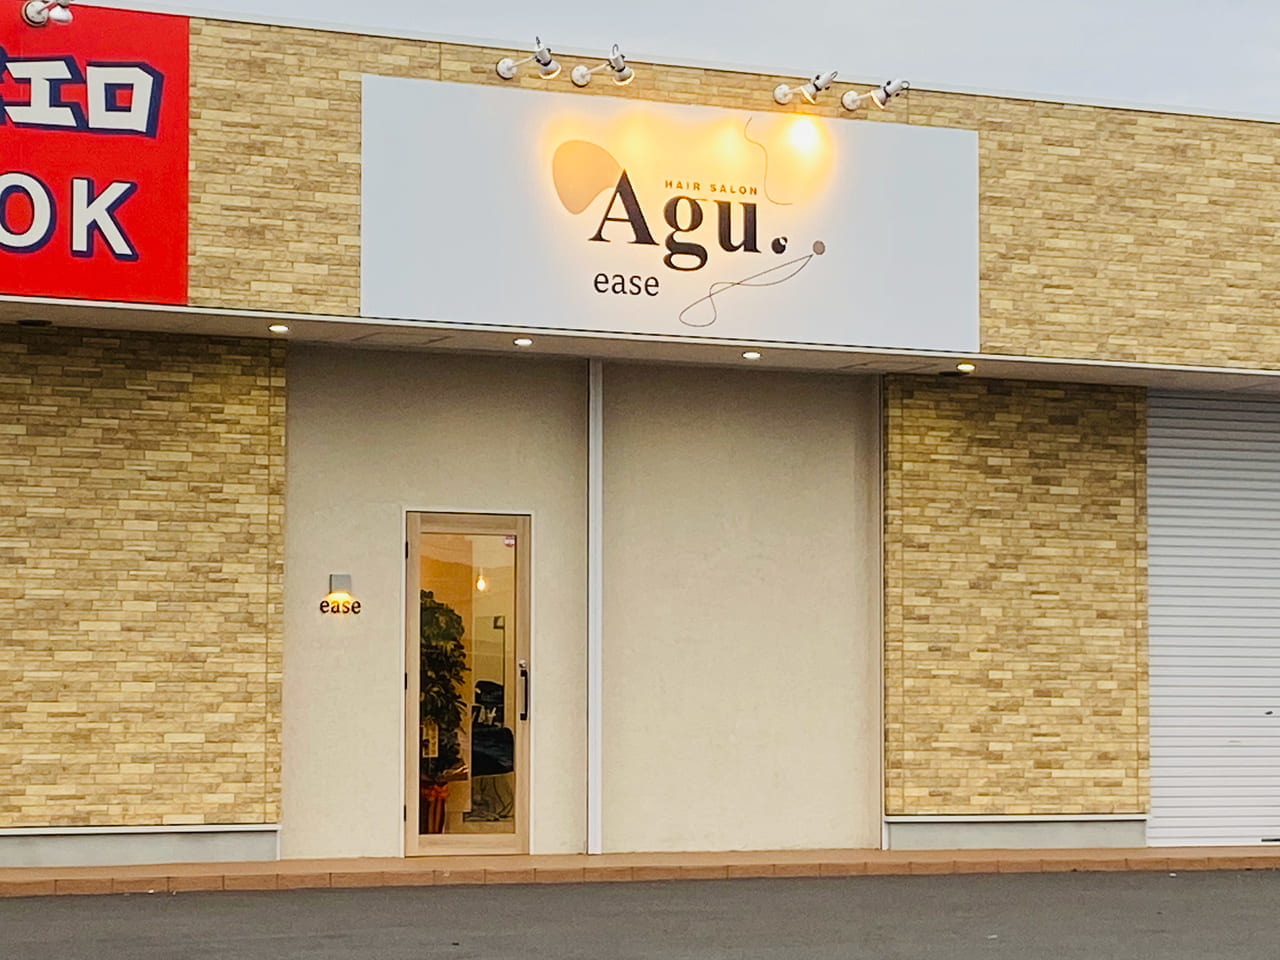 Agu hair ease太田2号店